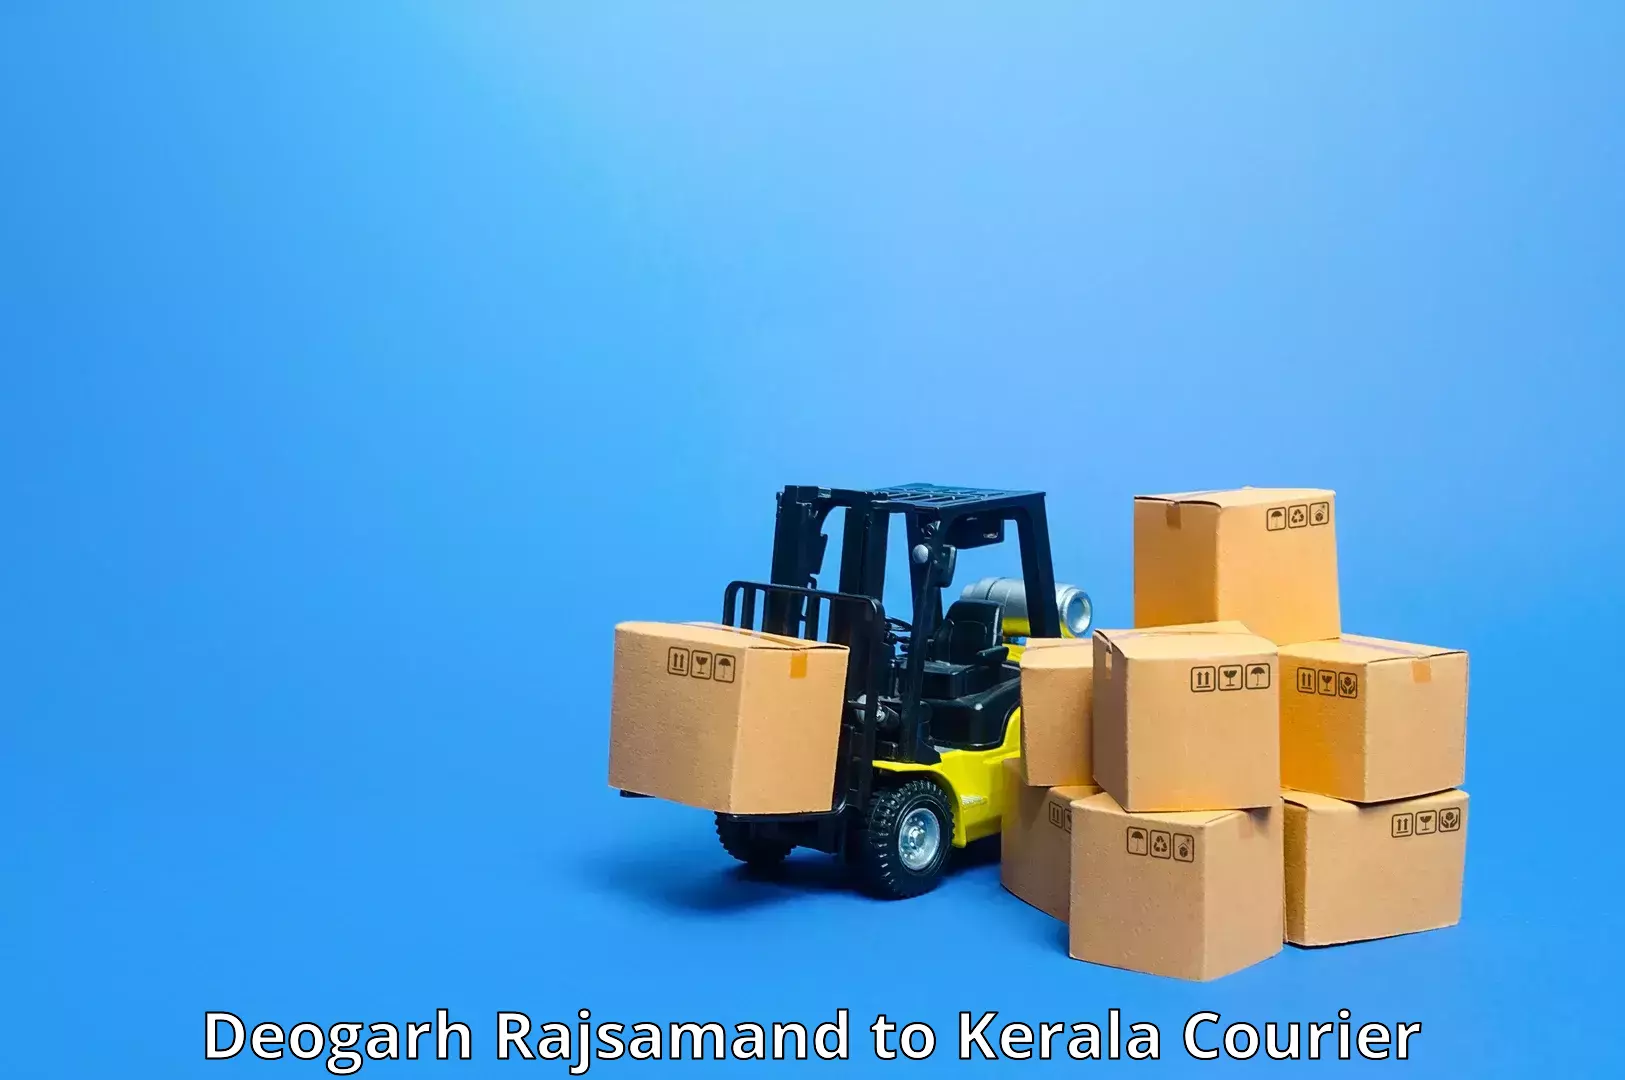 Express shipping Deogarh Rajsamand to Munnar